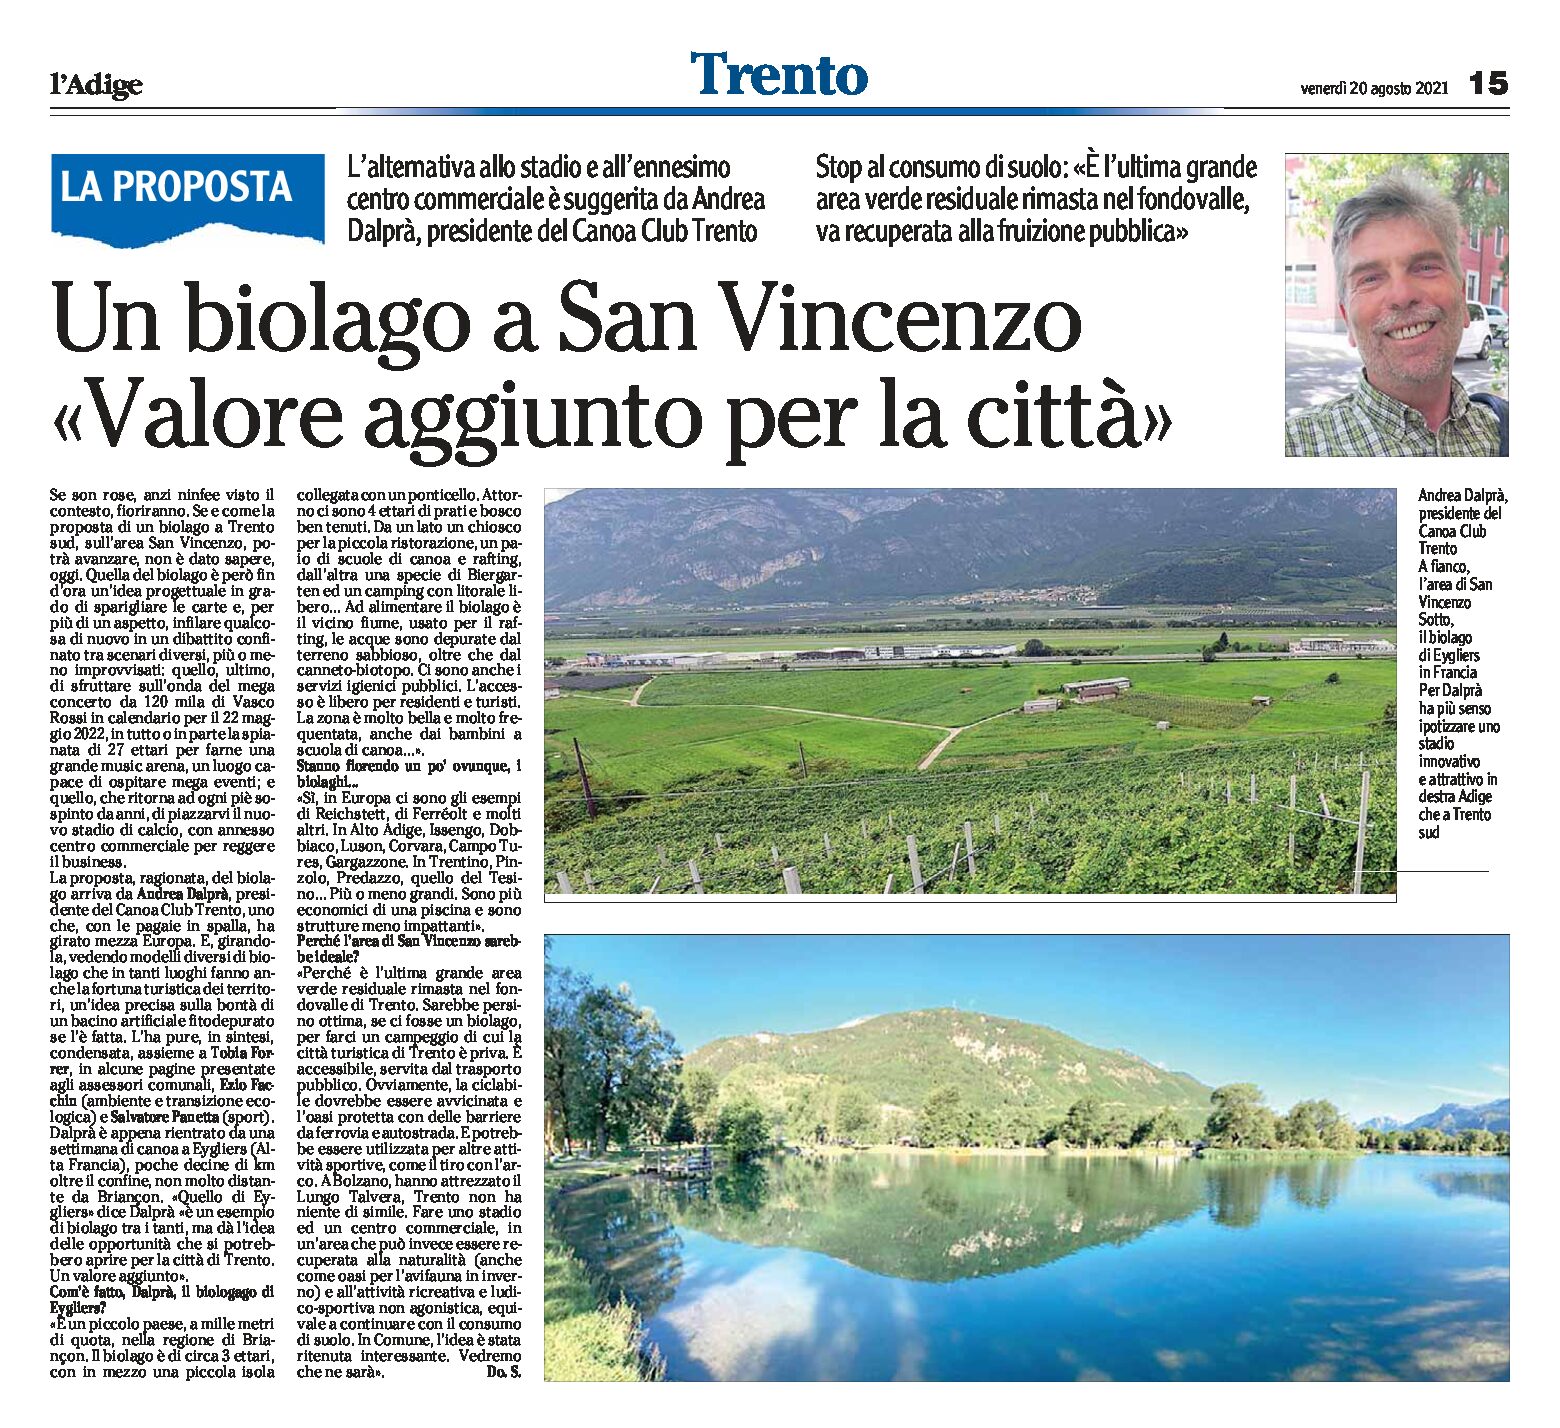 Trento, San Vincenzo: un biolago “valore aggiunto per la città”